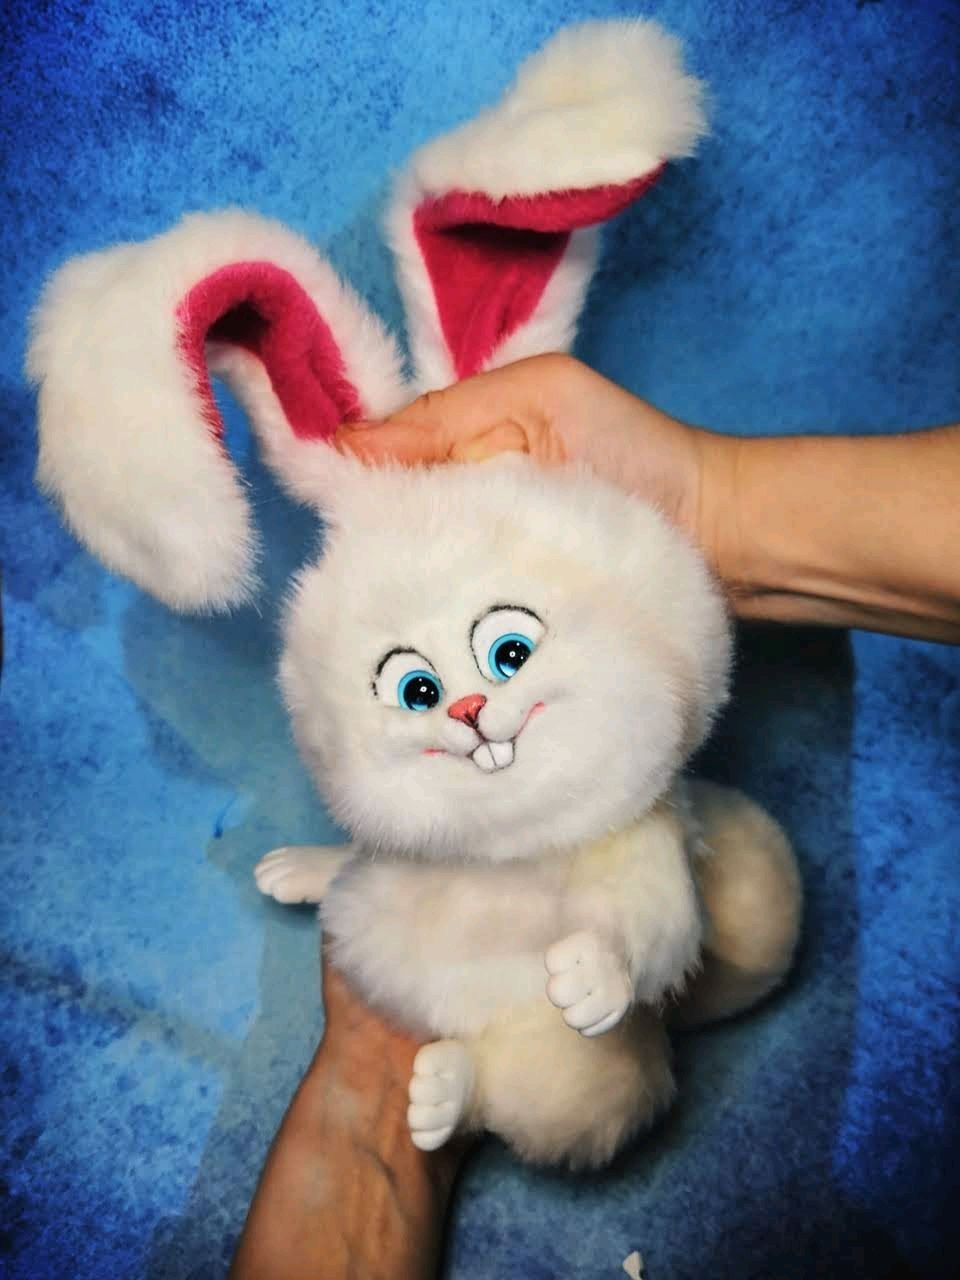 Кролик Снежок интерактивная игрушка Тайная жизнь животных